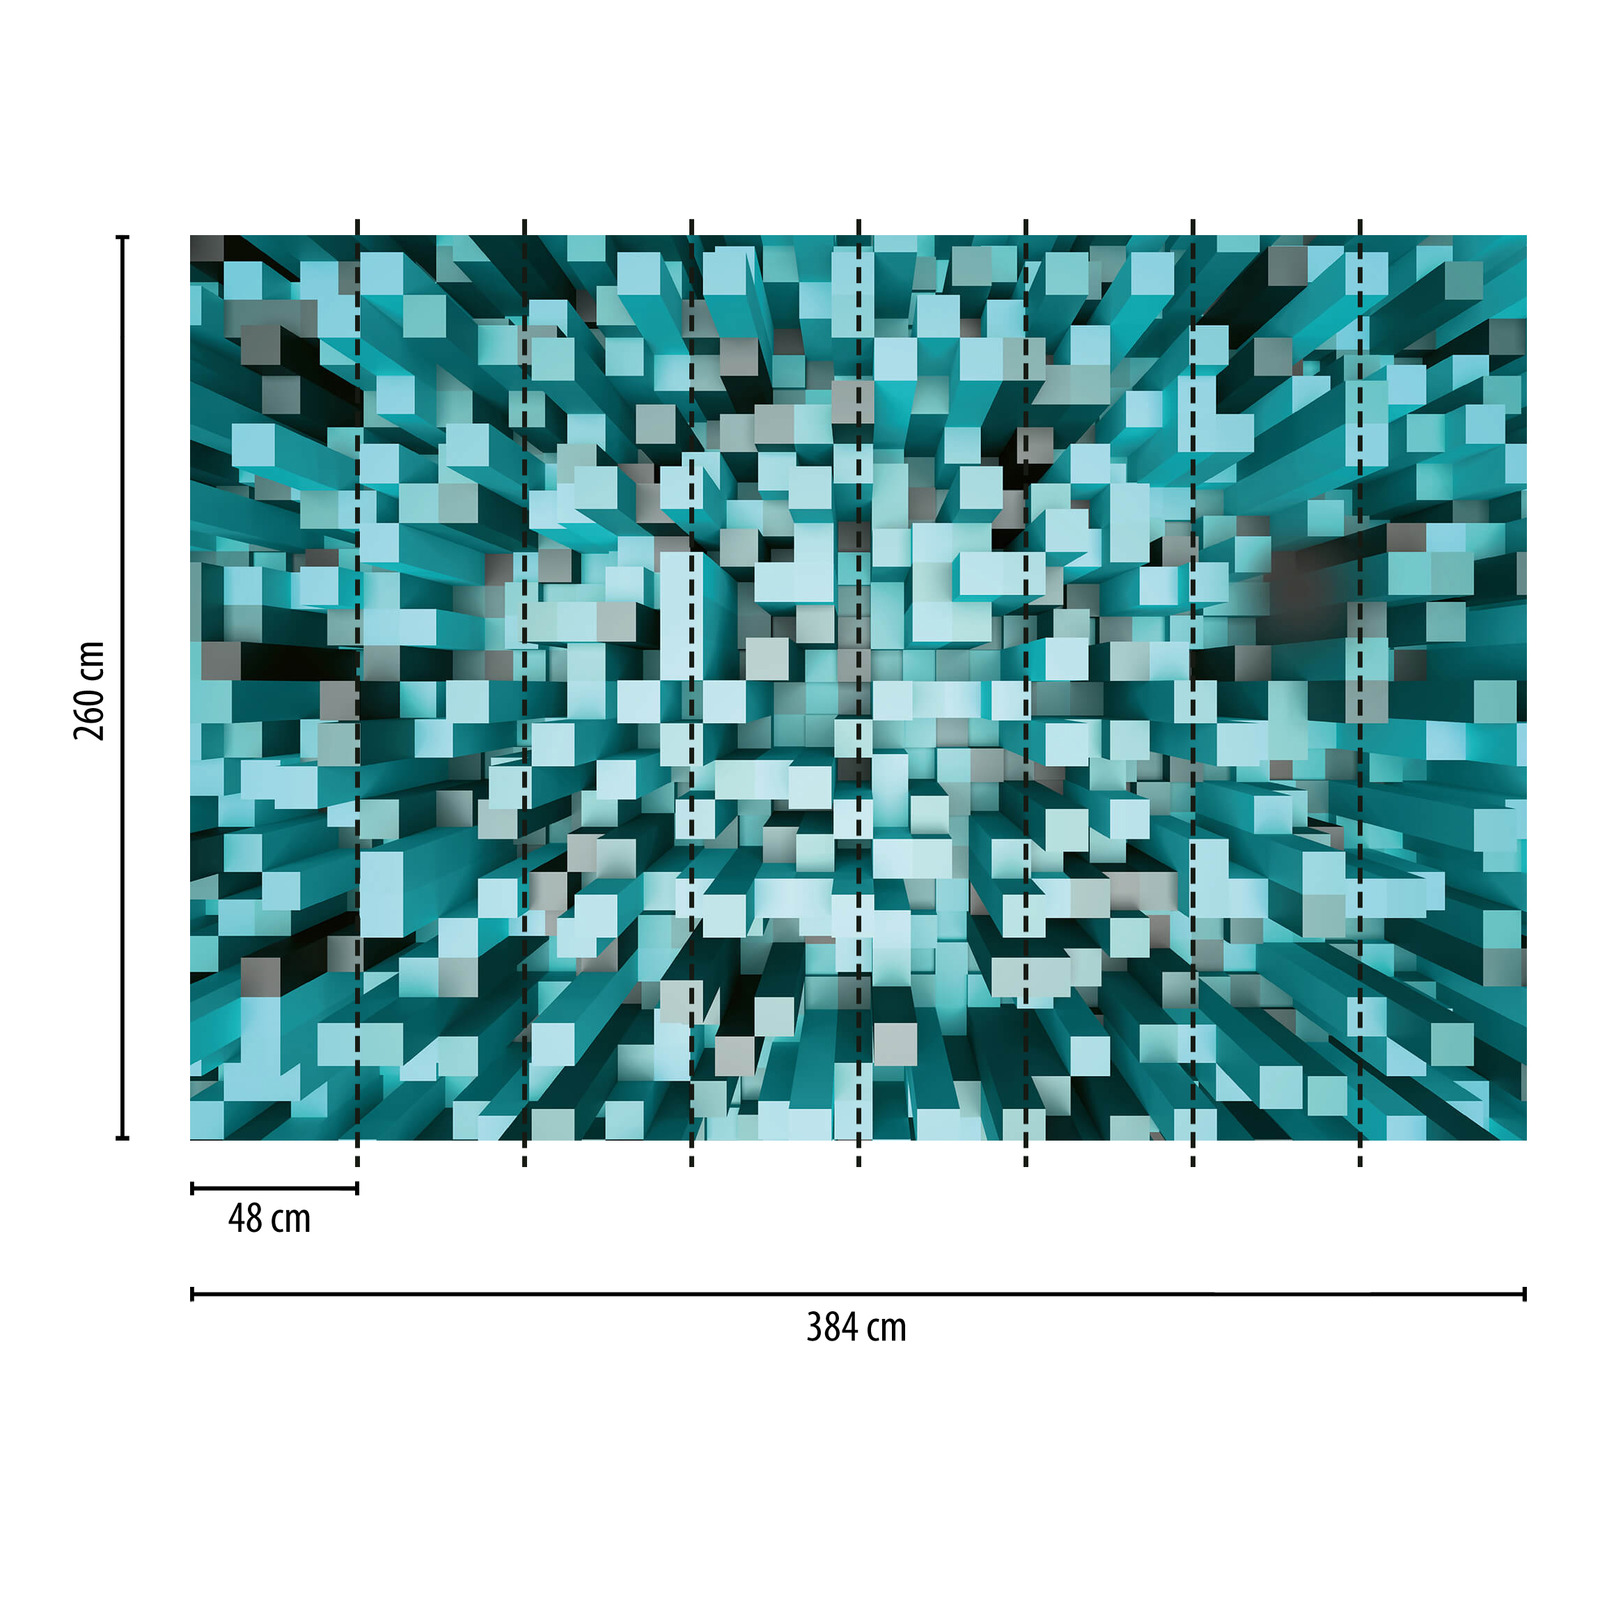             3D Vierkant Patroonbehang in pixelstijl - Turquoise
        